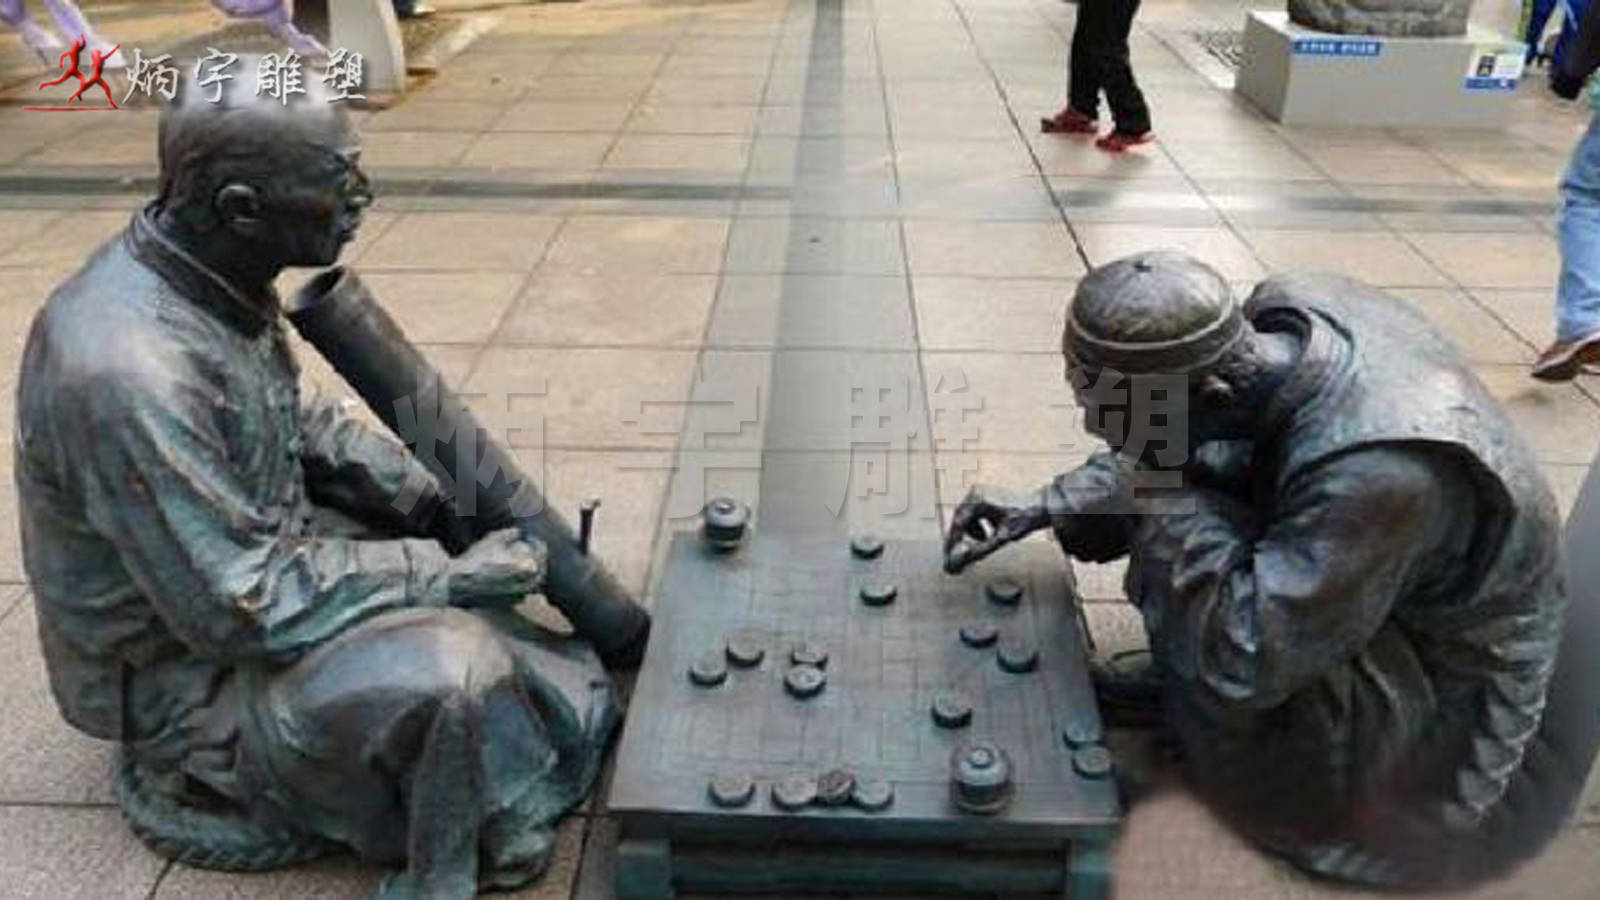 铸铜人物雕塑 下棋雕塑,古代民俗雕塑,公园景观雕塑 下象棋人物雕塑